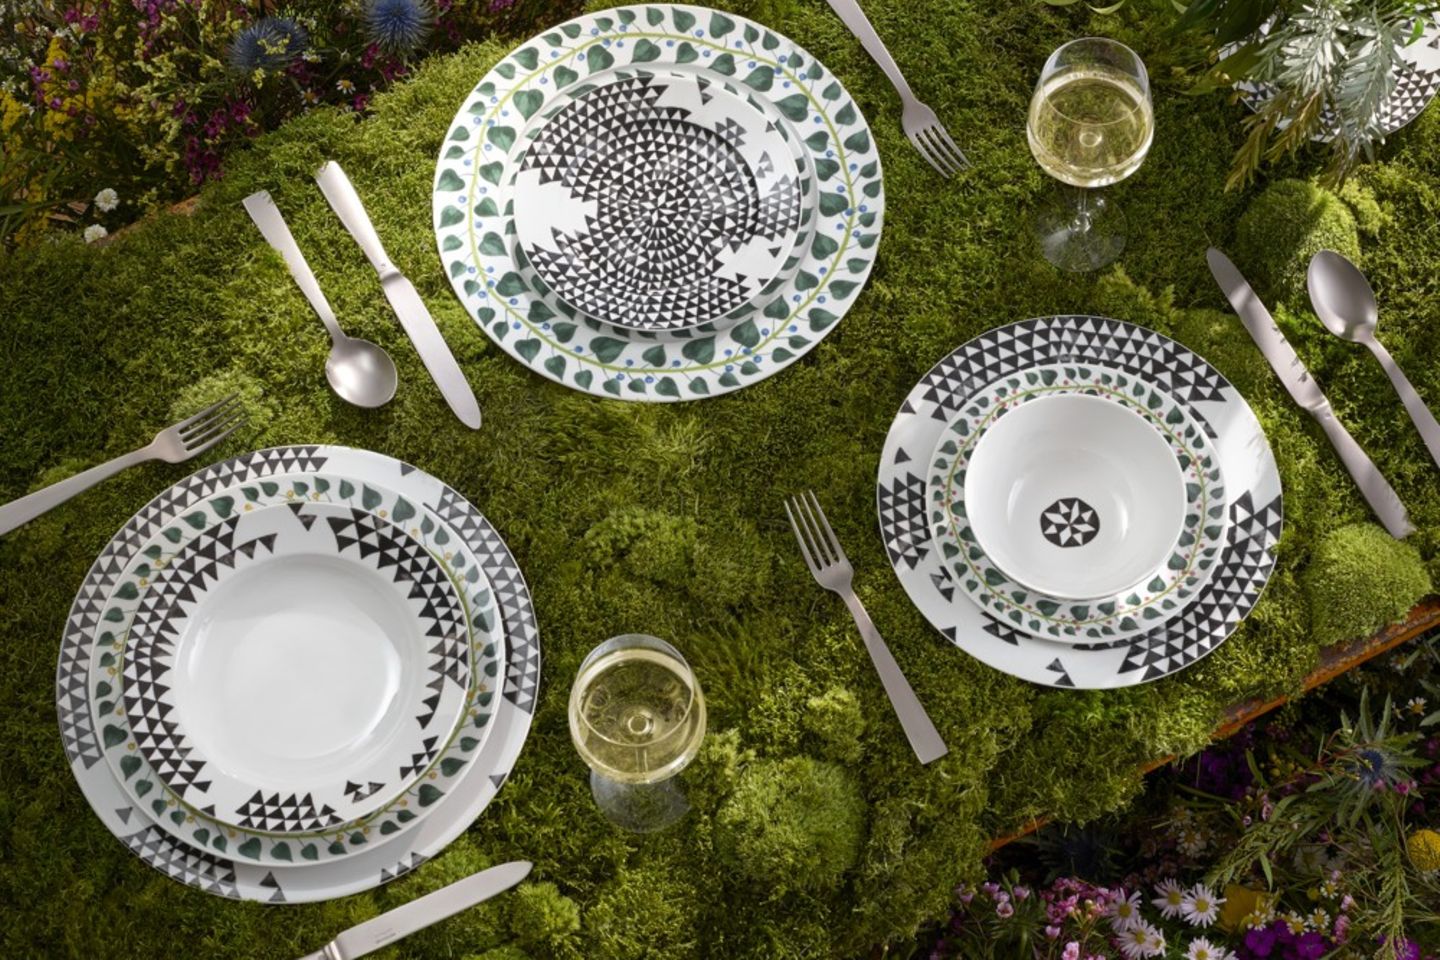 Porzellankollektion "Magic Garden“ von Rosenthal auf einem mit Moos bedeckten Tisch